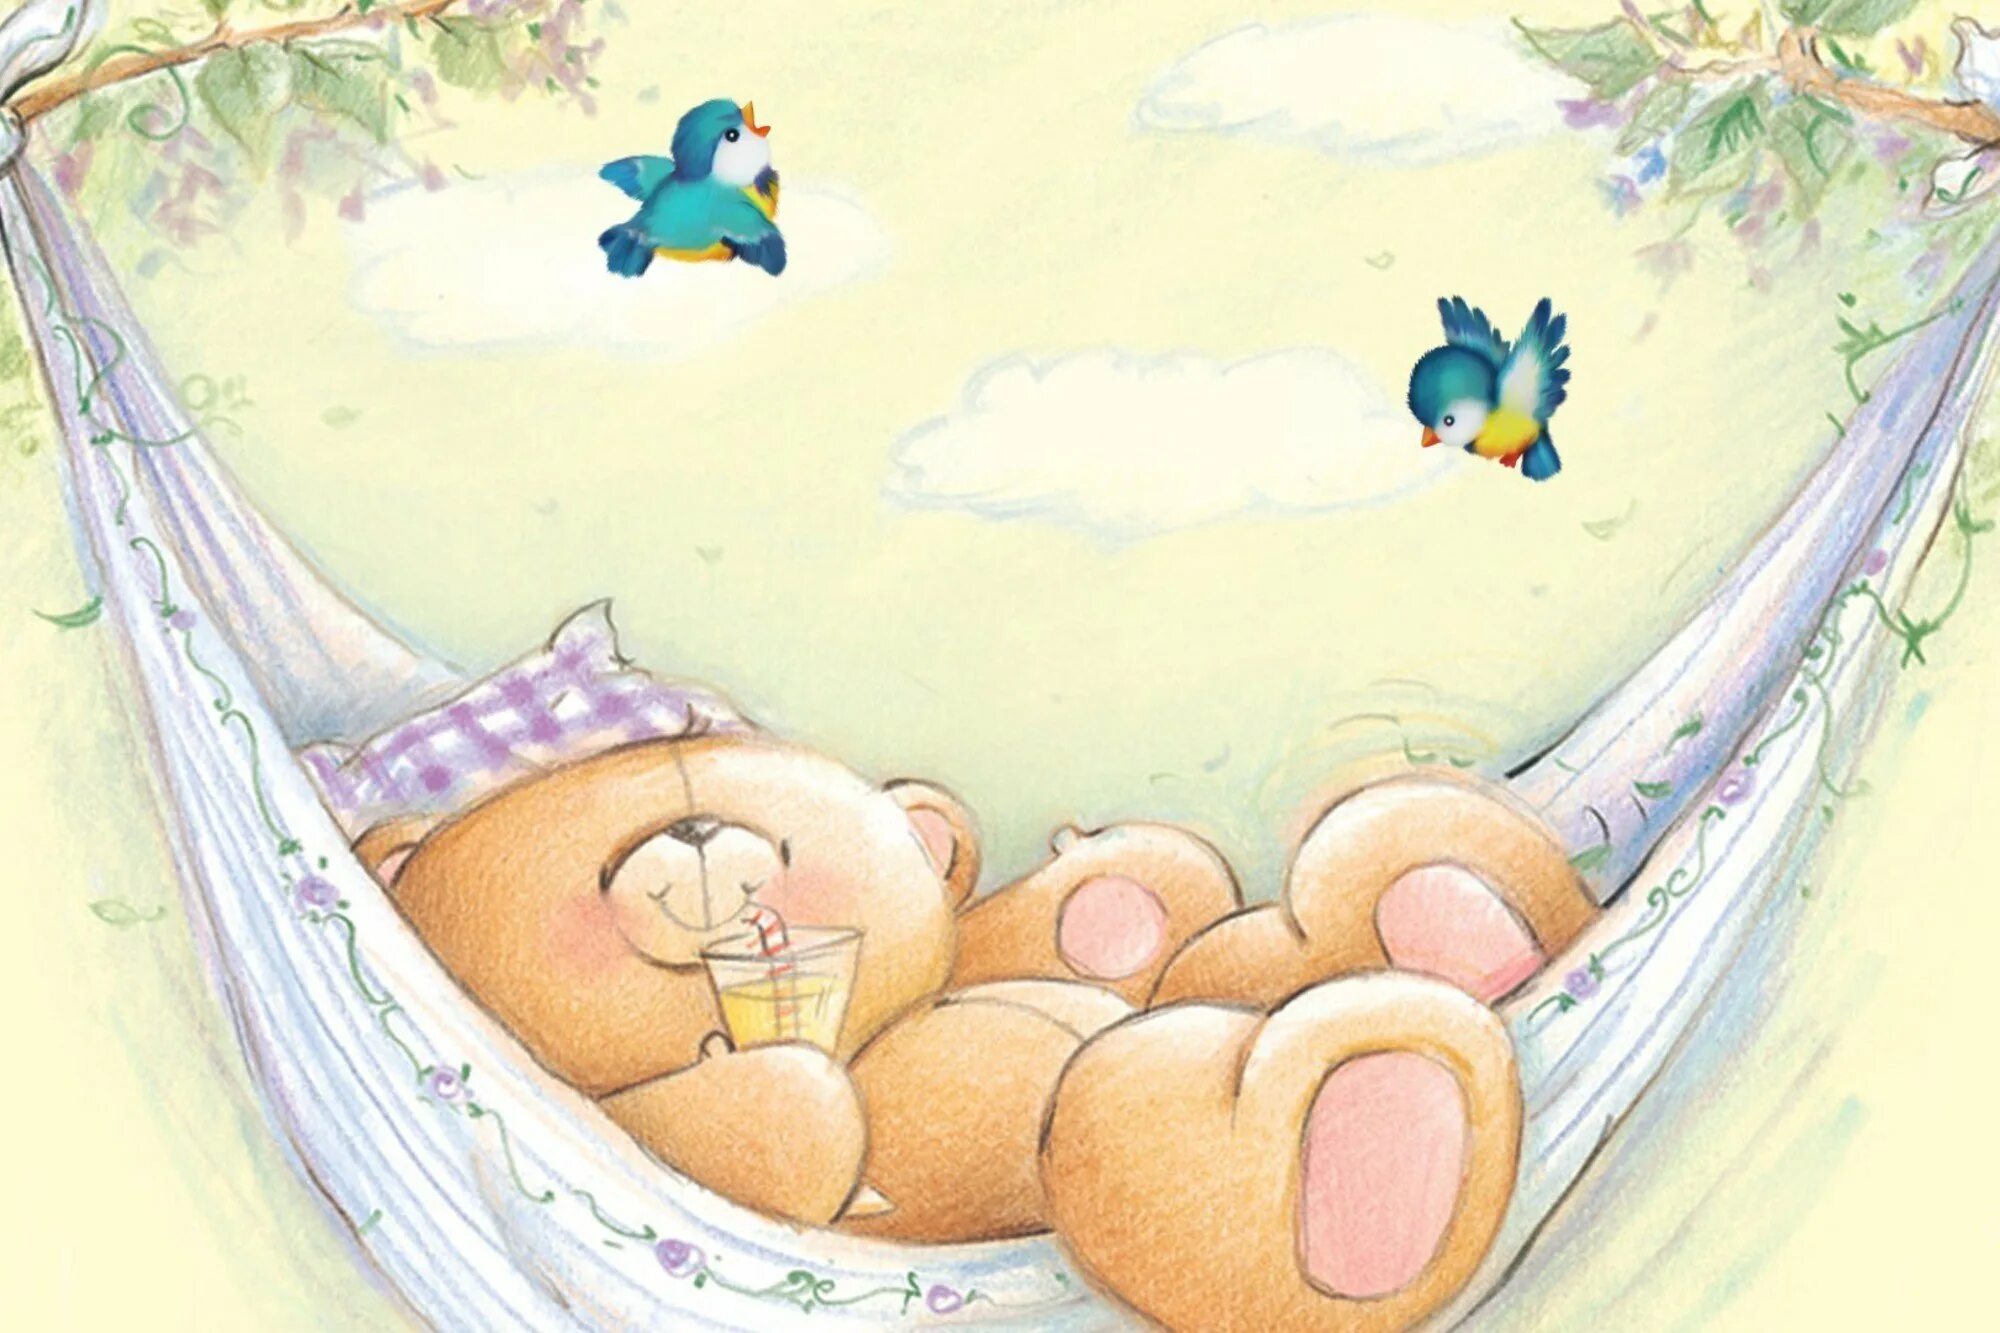 Жизнь колыбельная. Спать в гамаке. Детские сны. Мишка в гамаке. Иллюстрация к колыбельной.